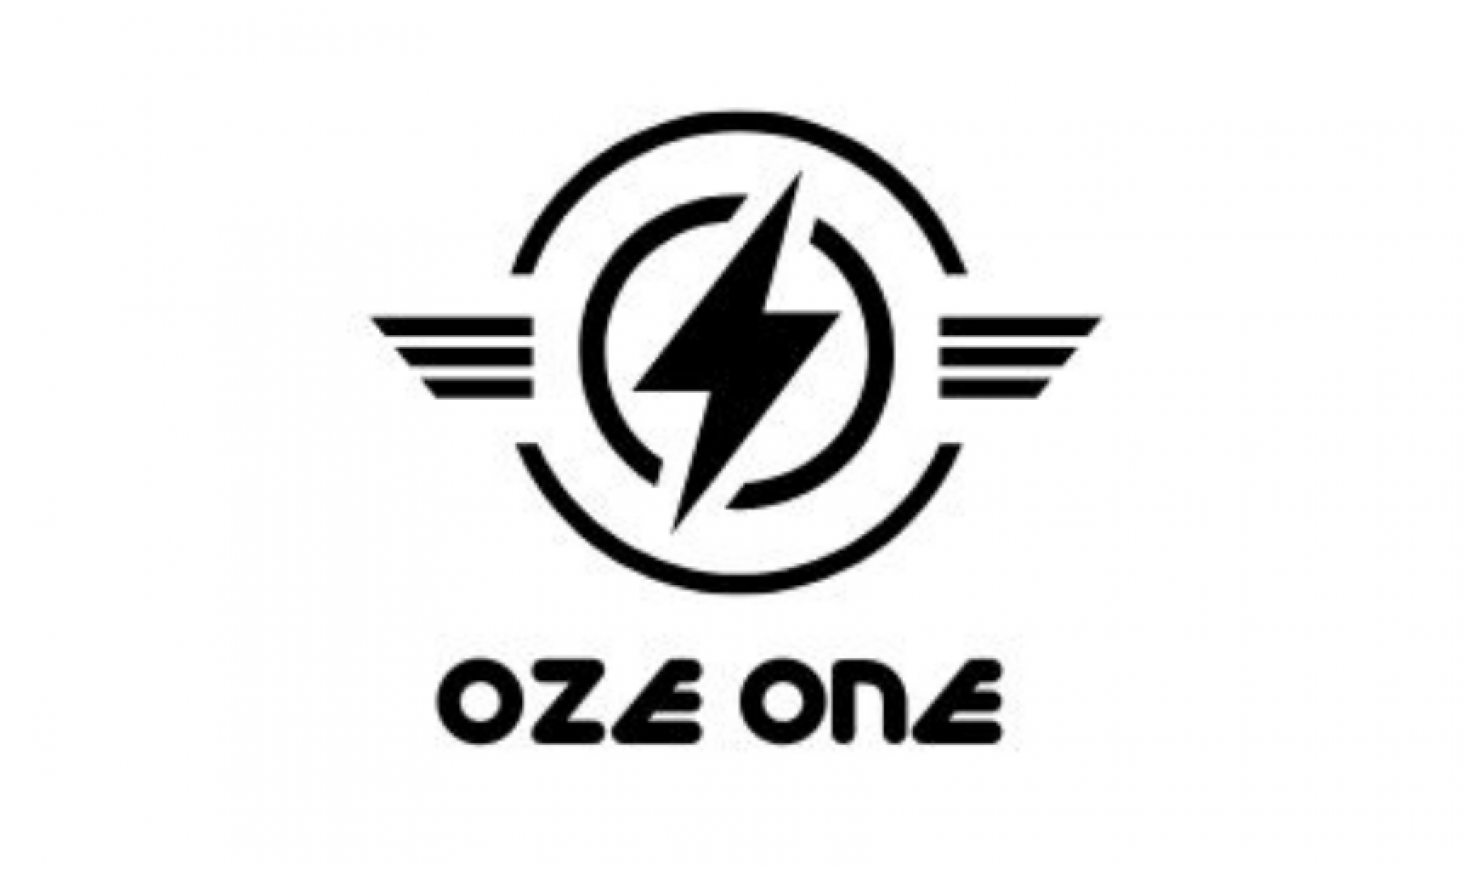 OZE 1 logo